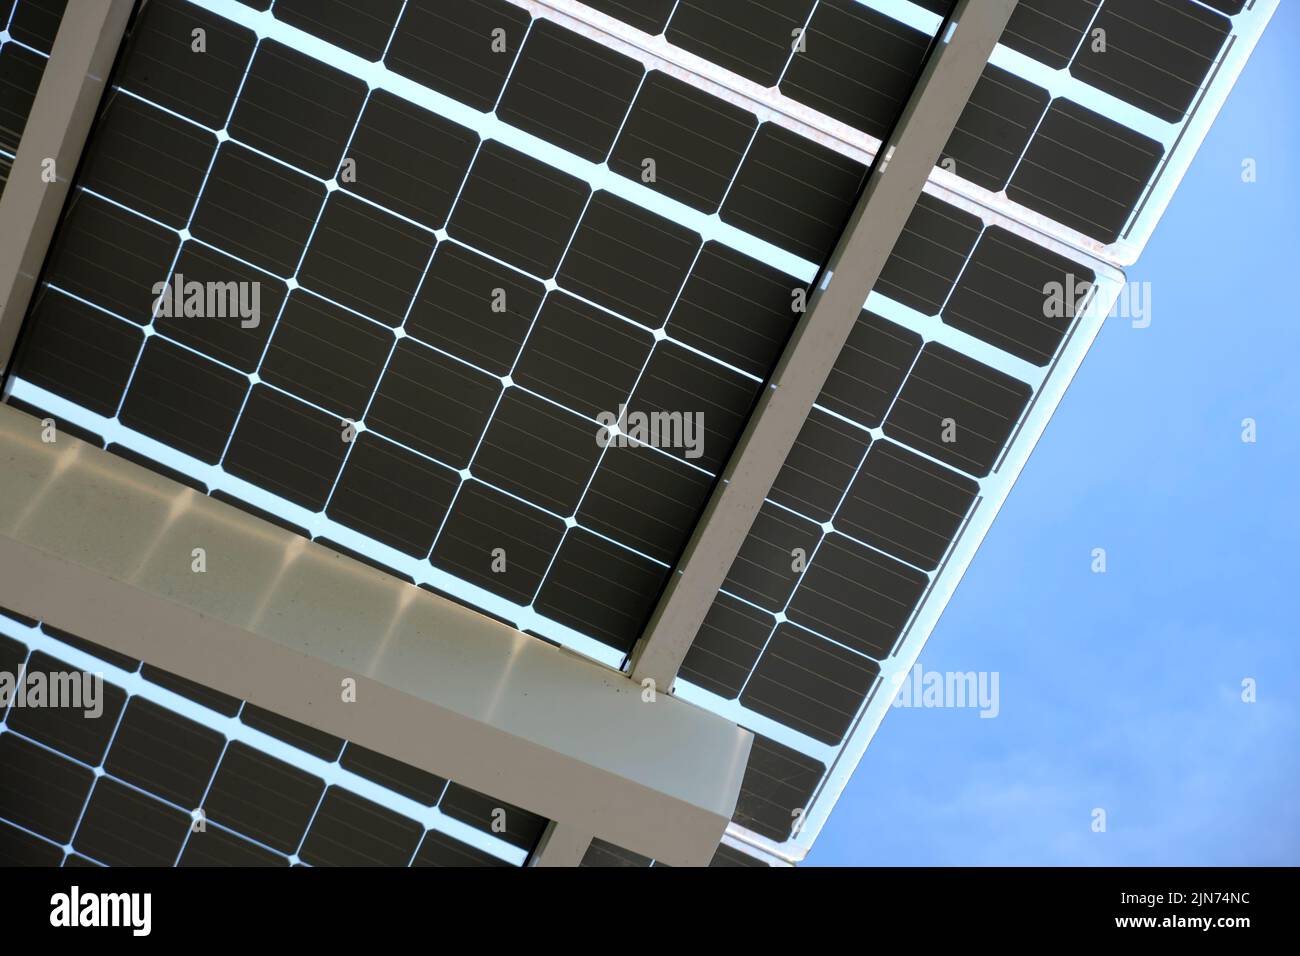 Panneaux photovoltaïques solaires montés sur un cadre métallique pour produire de l'énergie électrique écologique propre. Électricité renouvelable avec concept zéro émission Banque D'Images